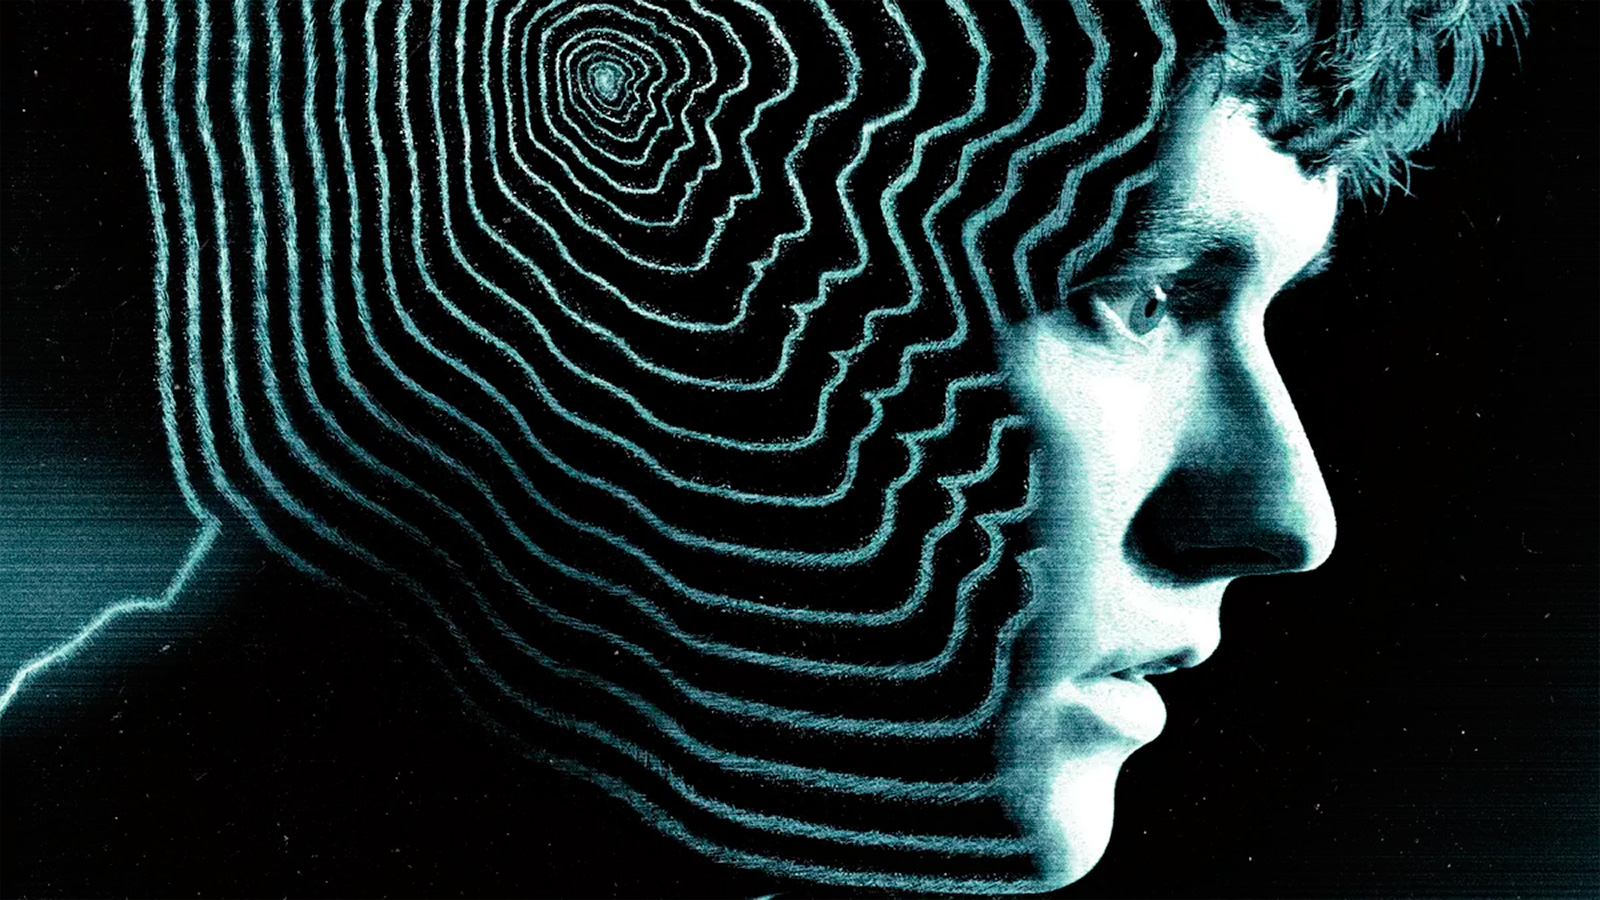 Un'immagine promozionale del film evento interattivo "Bandersnatch" della serie "Black Mirror".